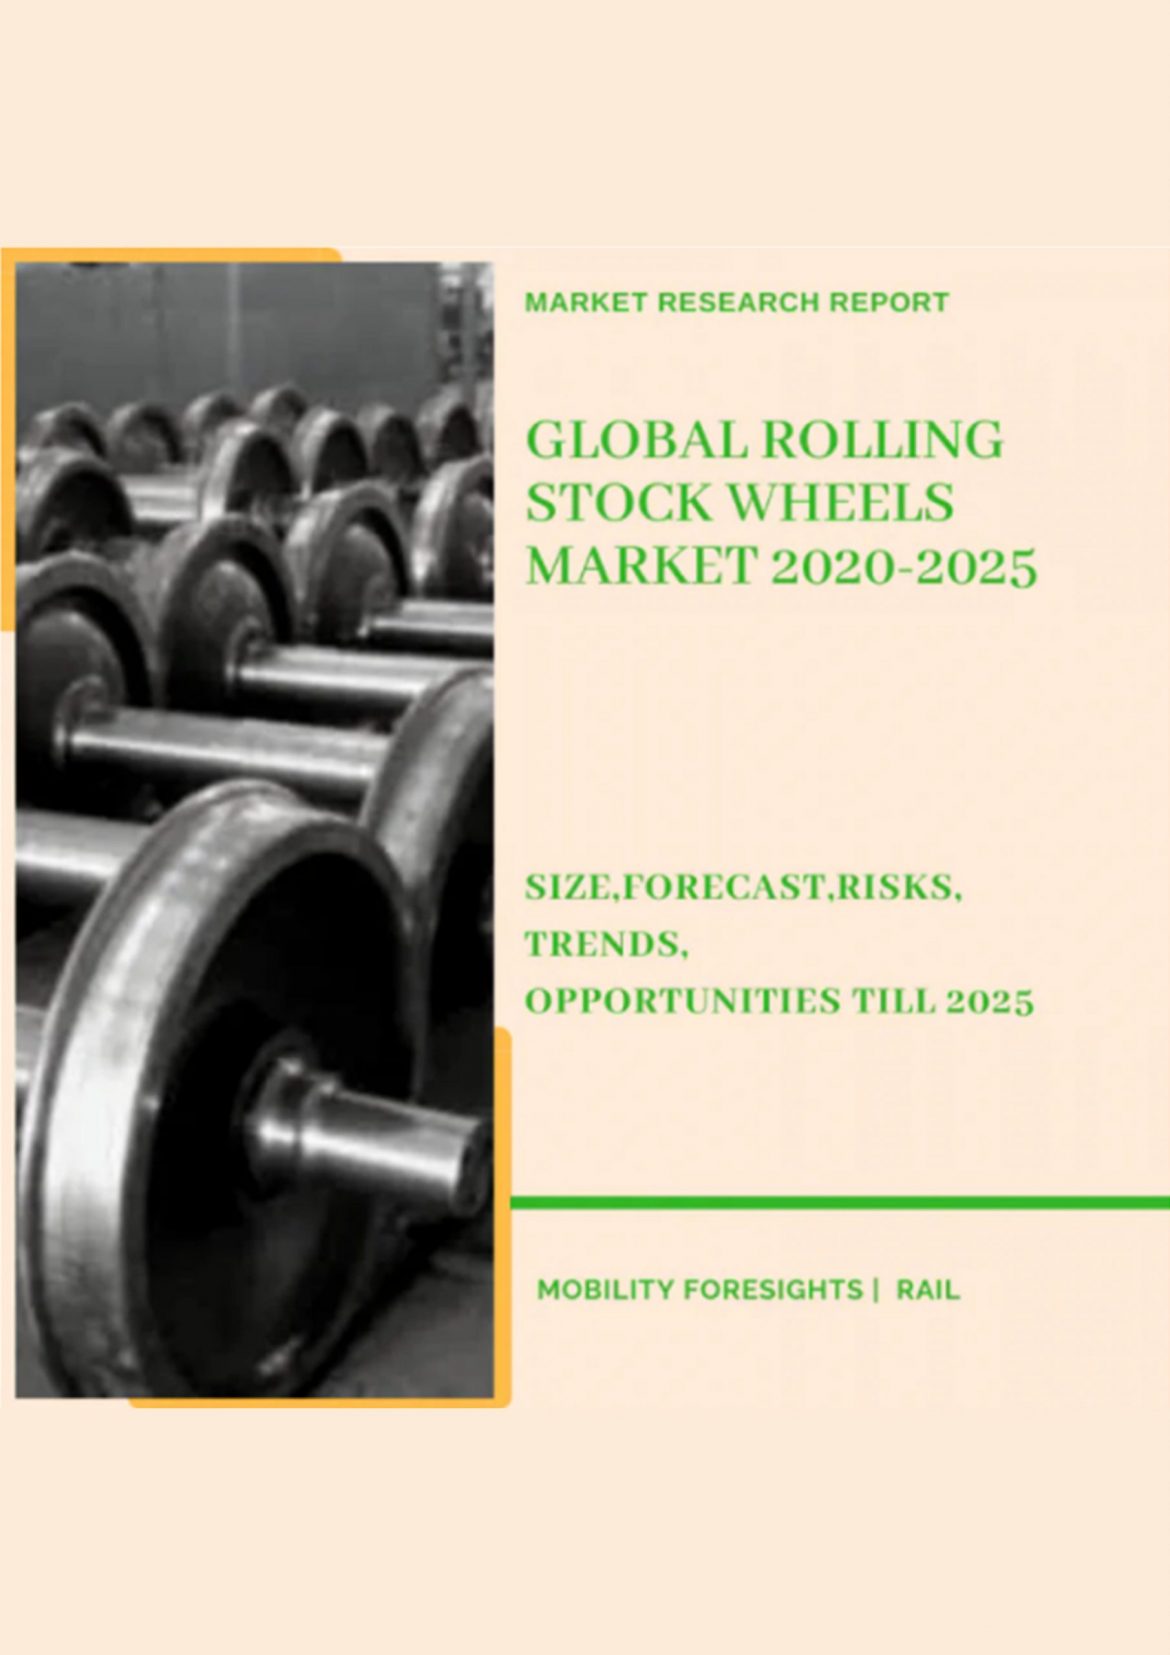 Global Rolling Stock Wheels Market 2020-2025